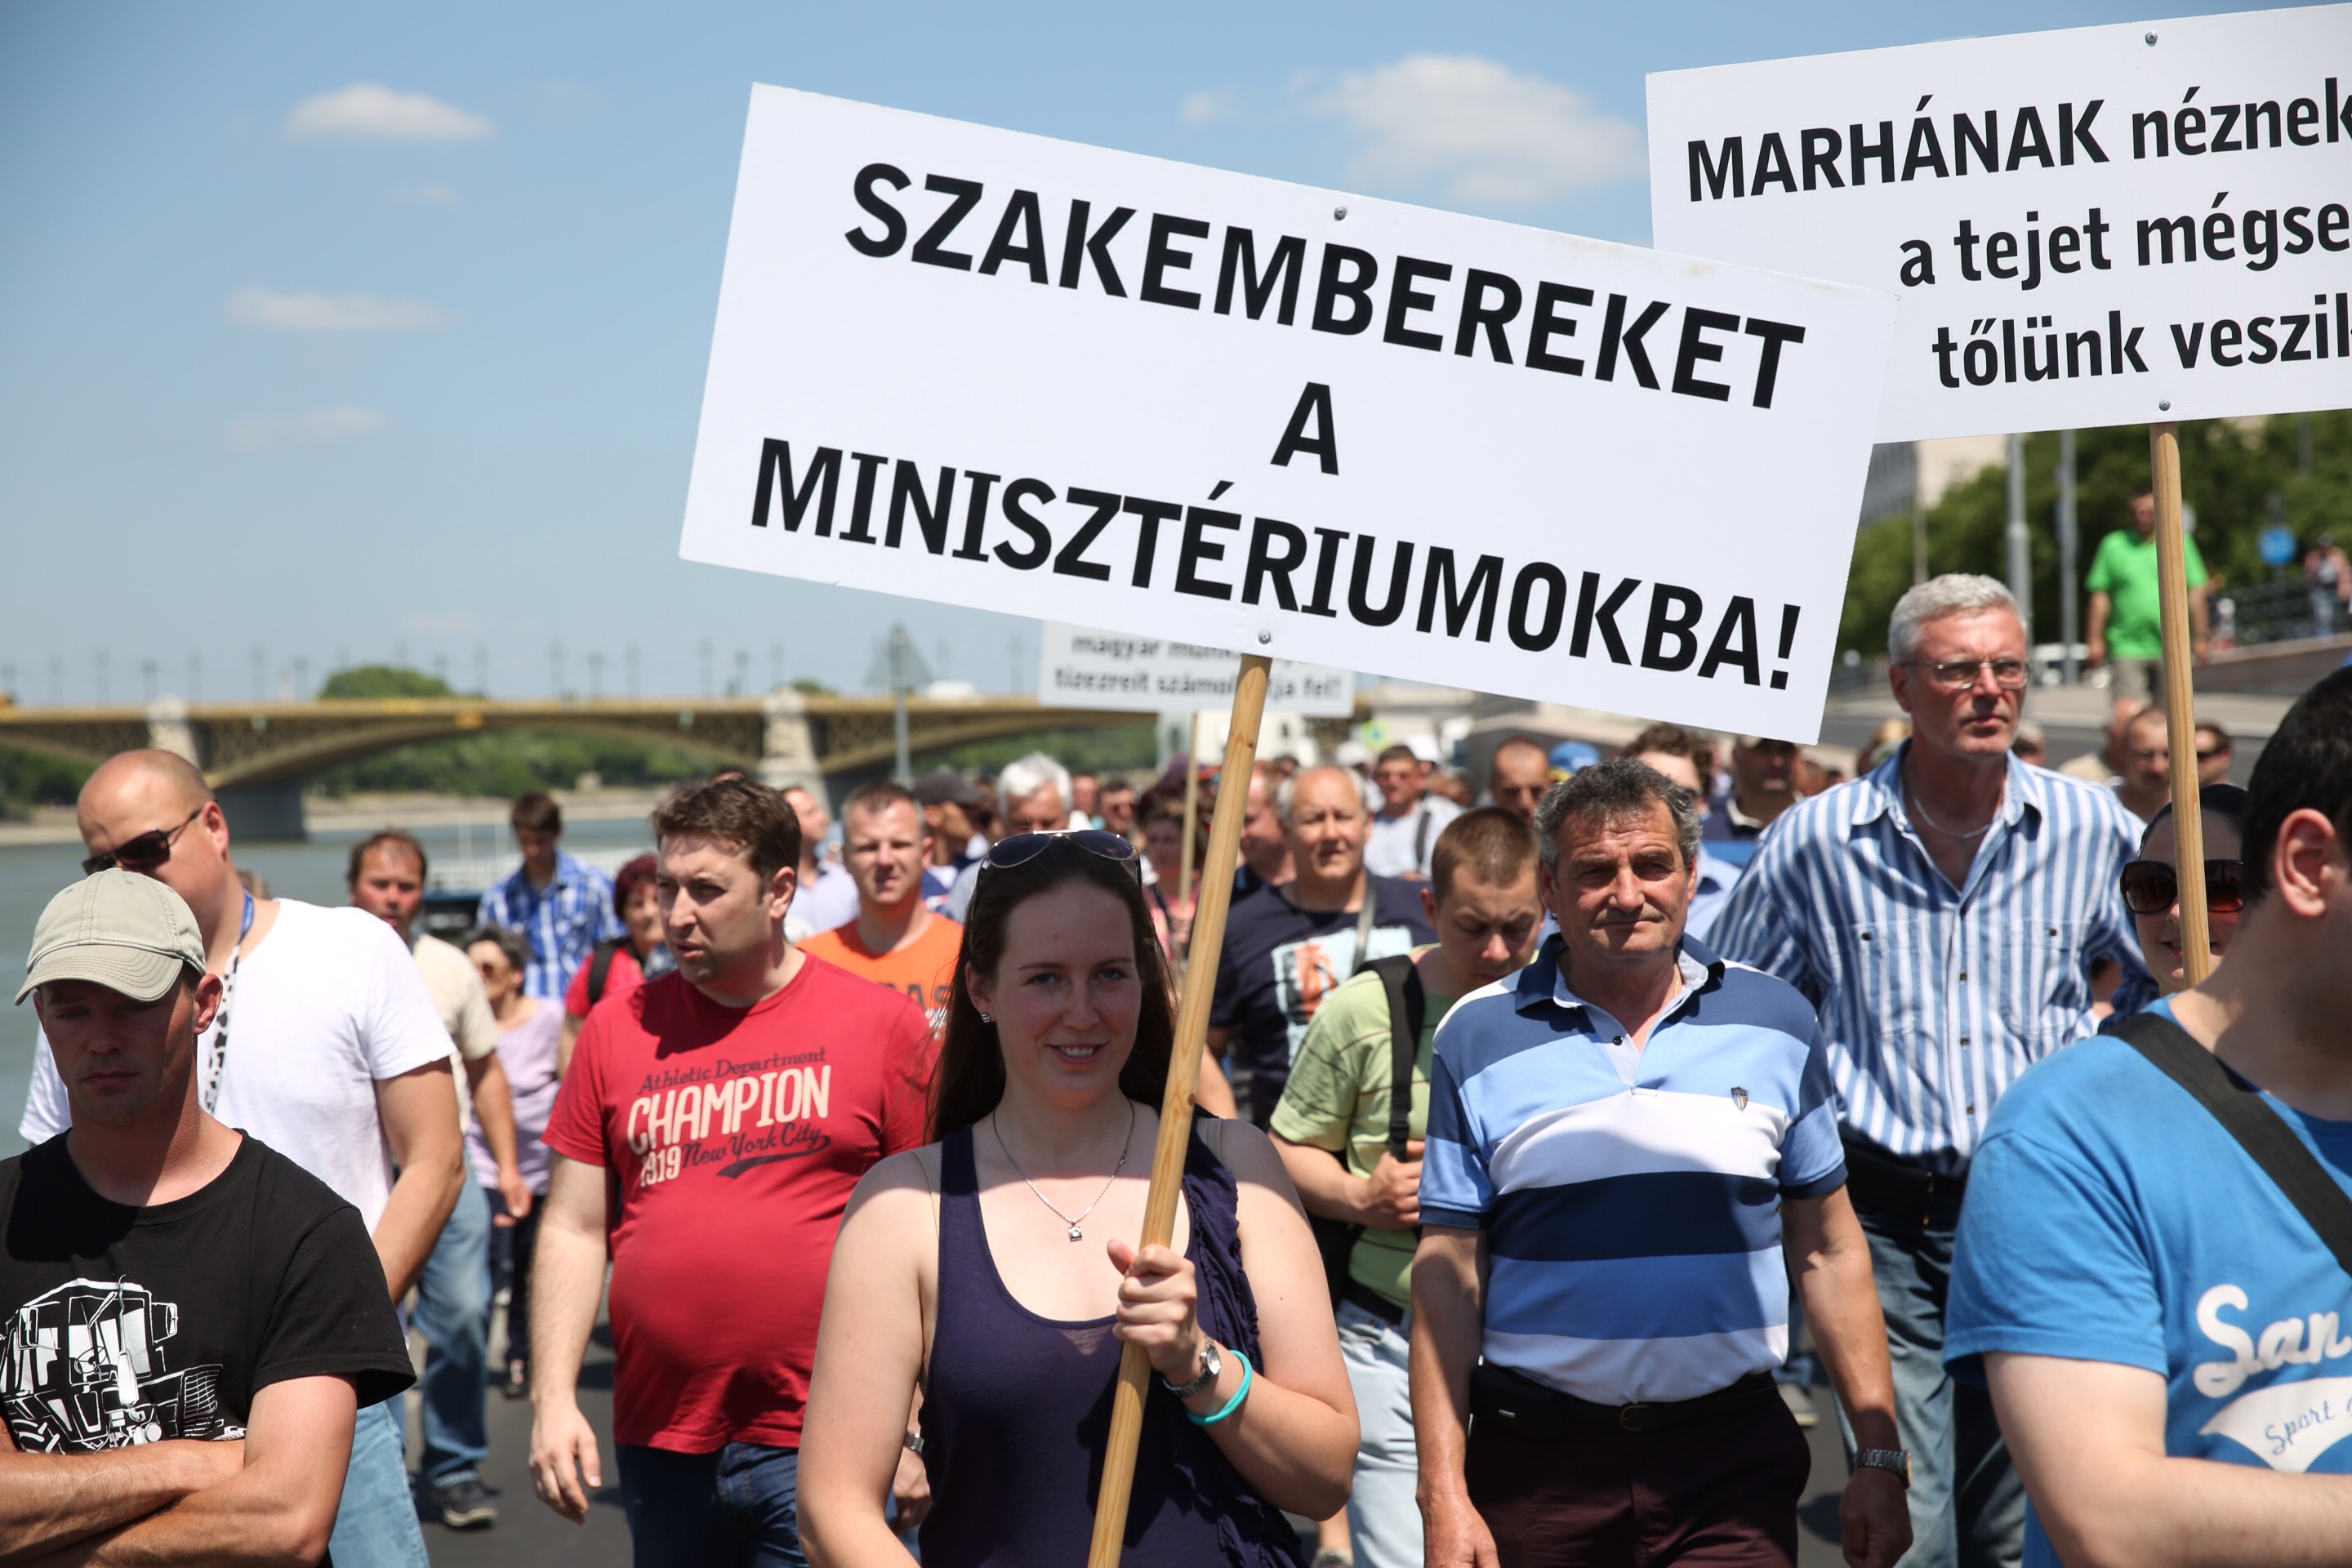 Fantasztikus szlogennel tüntetnek a tehenesek Budapesten